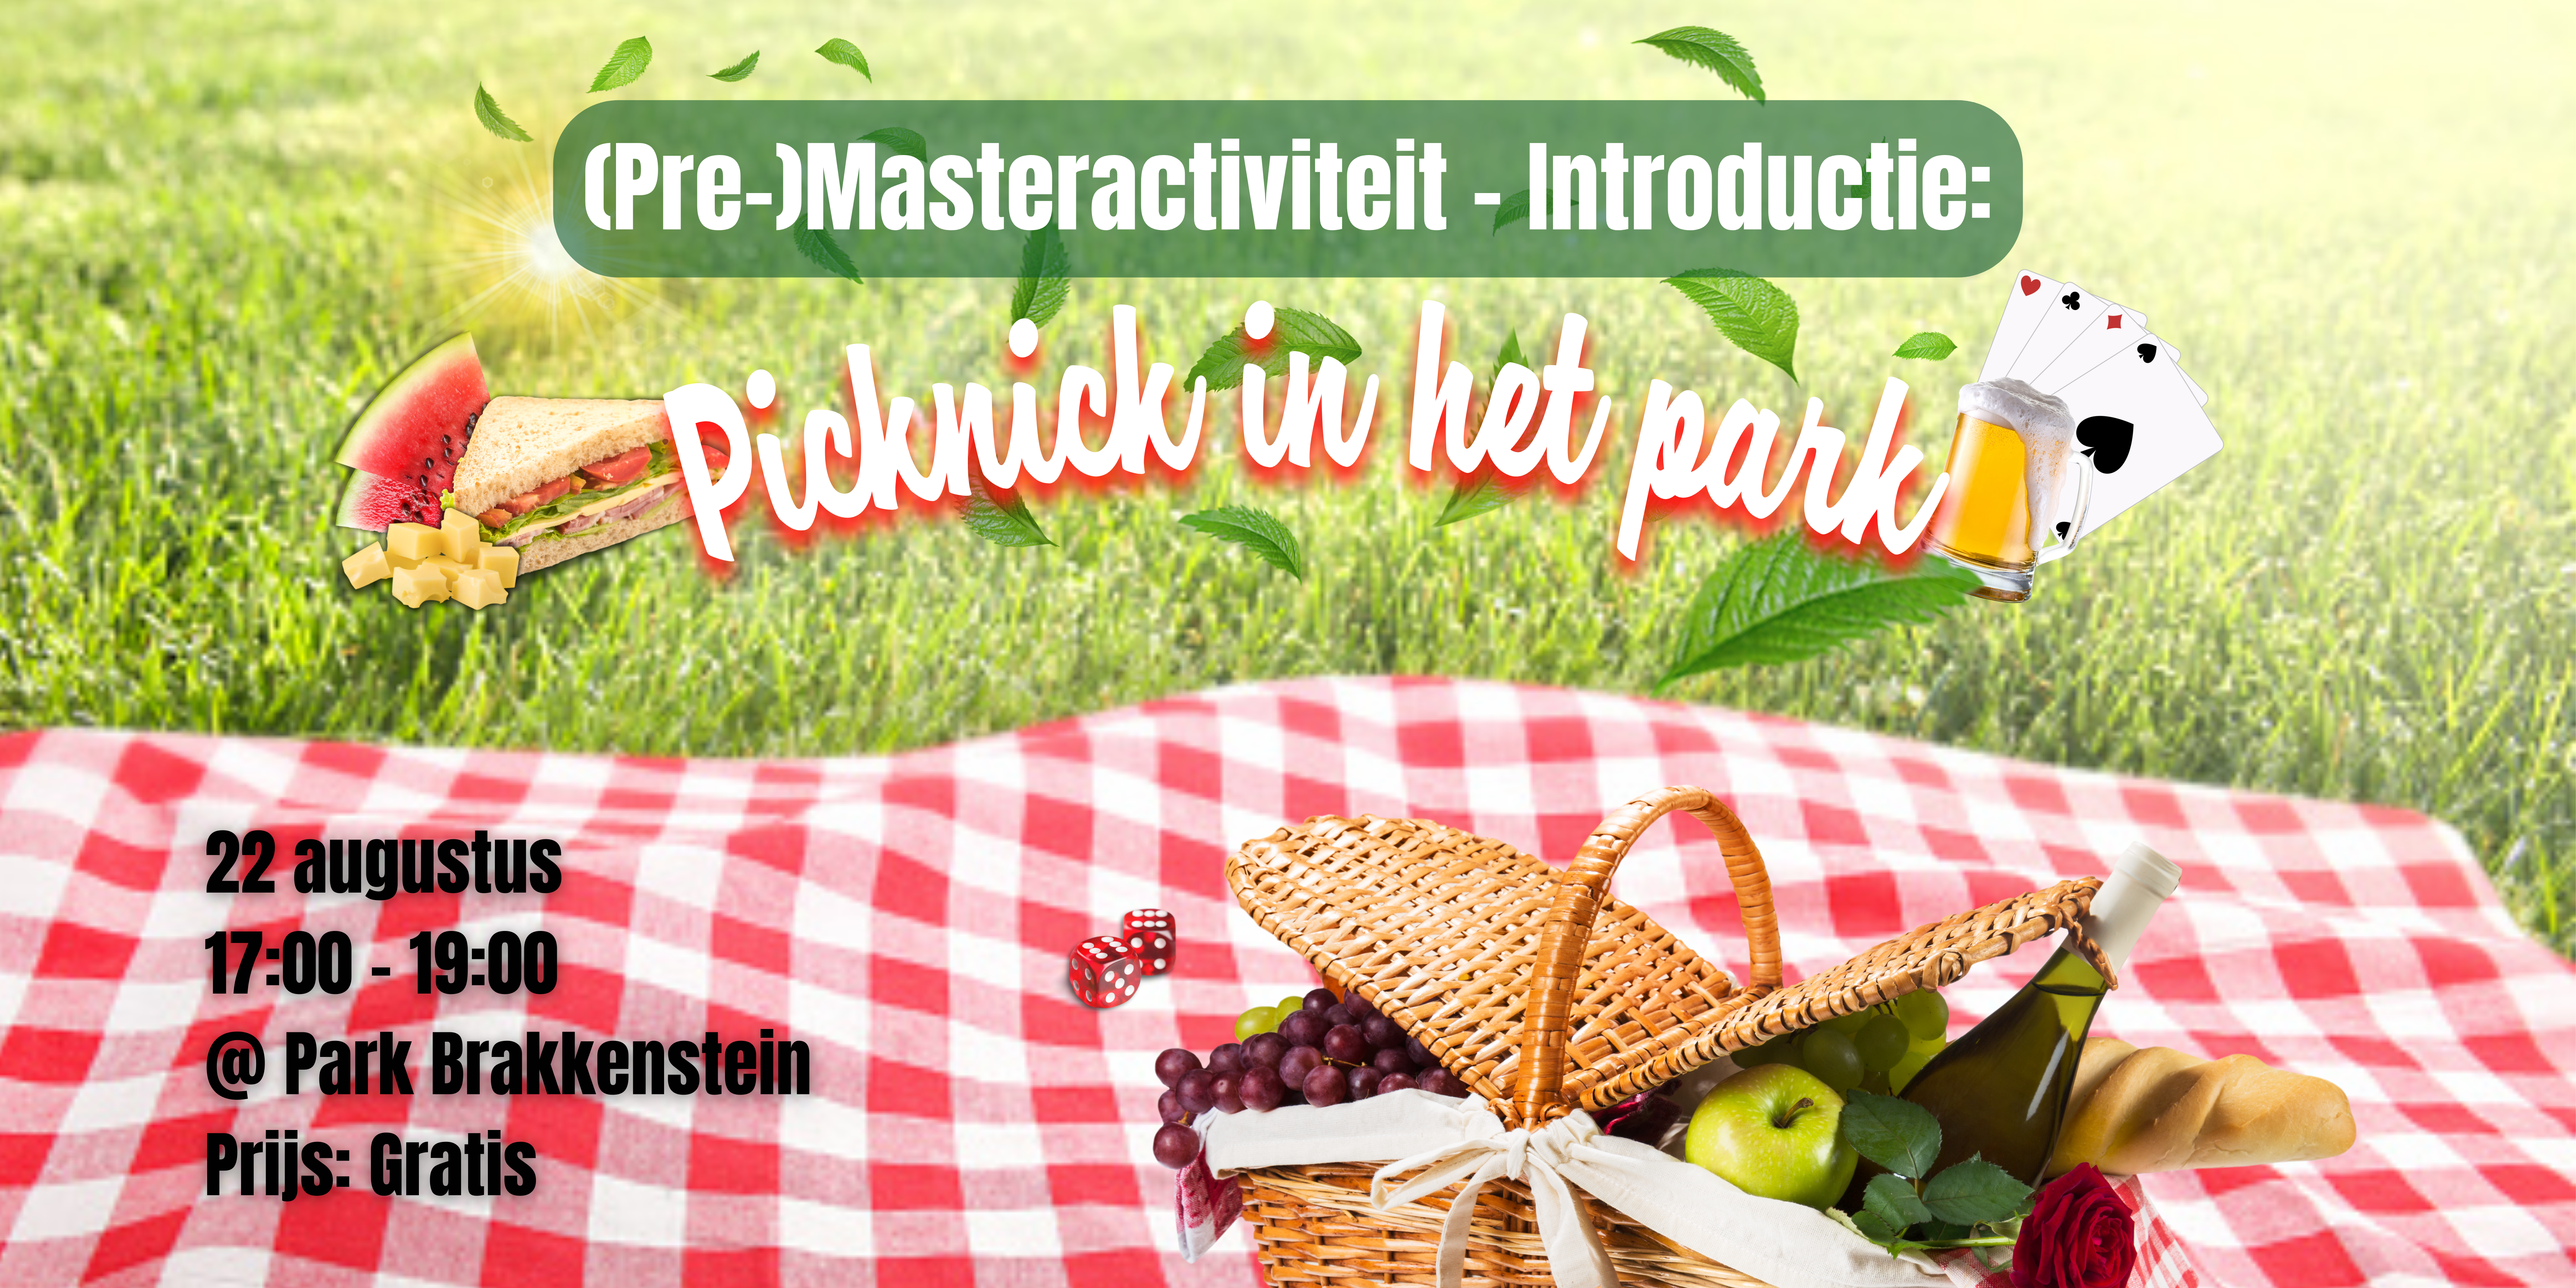 (Pre-)masteractiviteit introductie: Picknick in het park